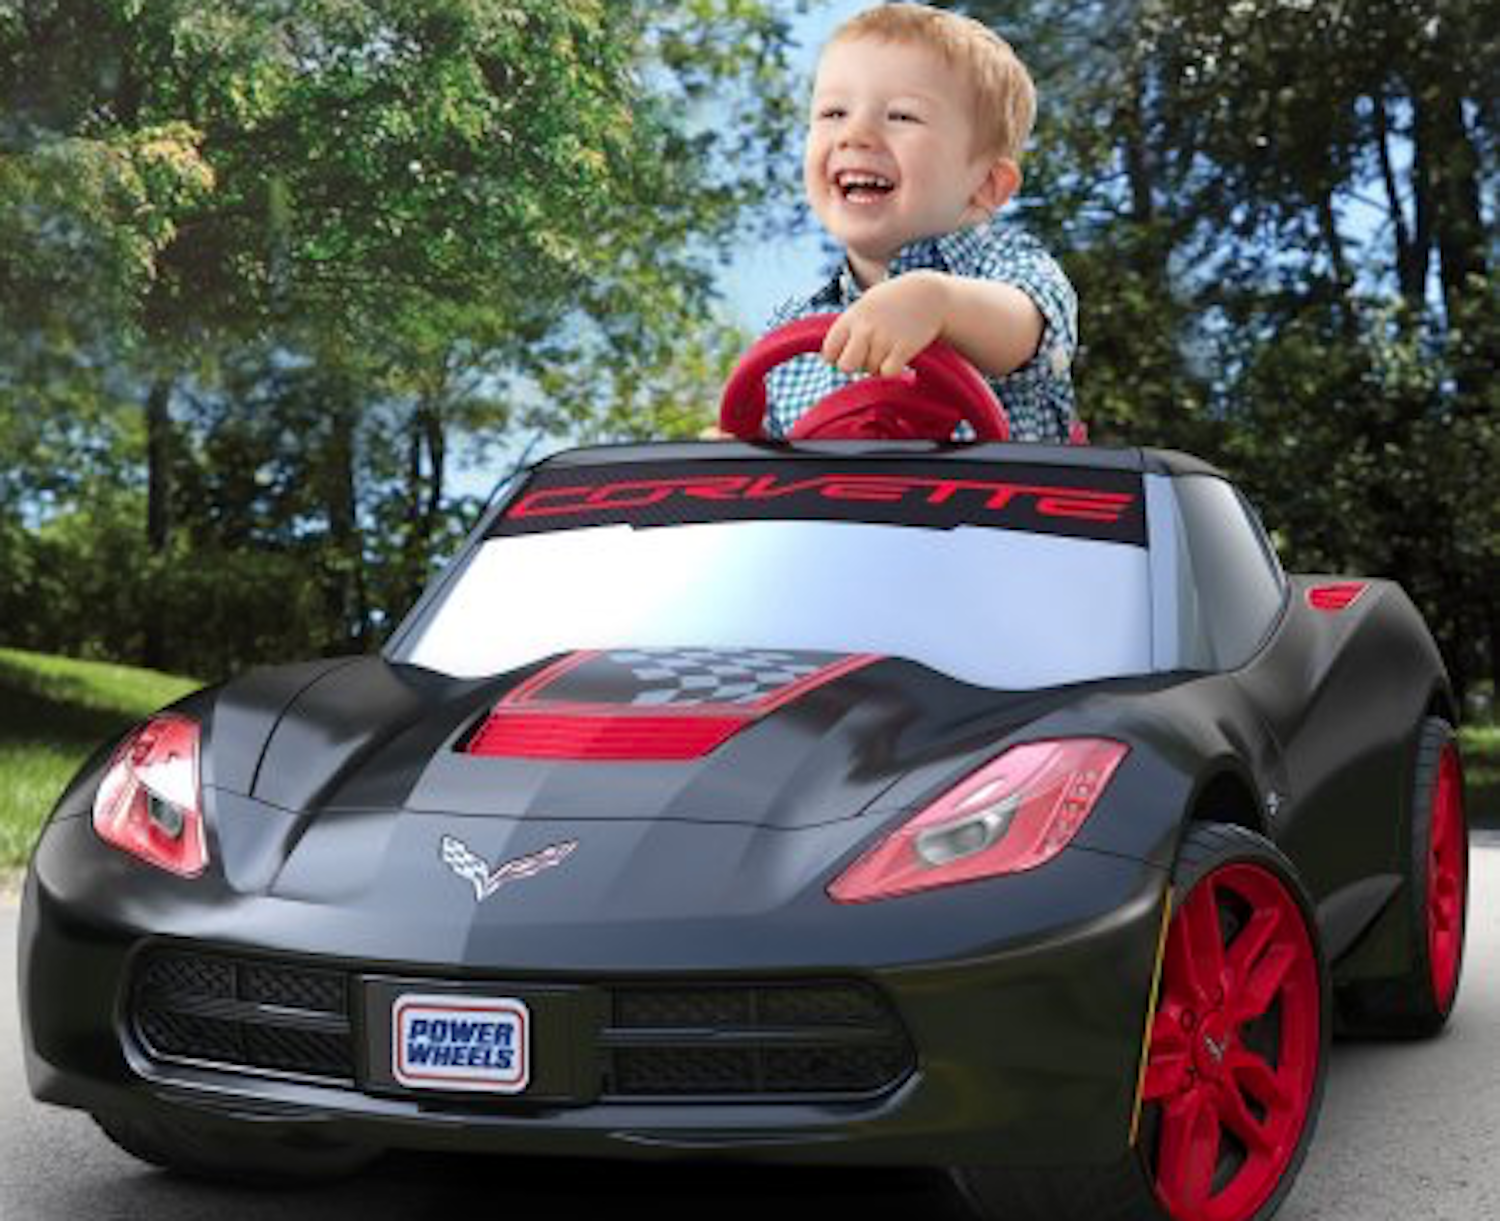 Power Wheels Corvette Ride-On Car For Kids